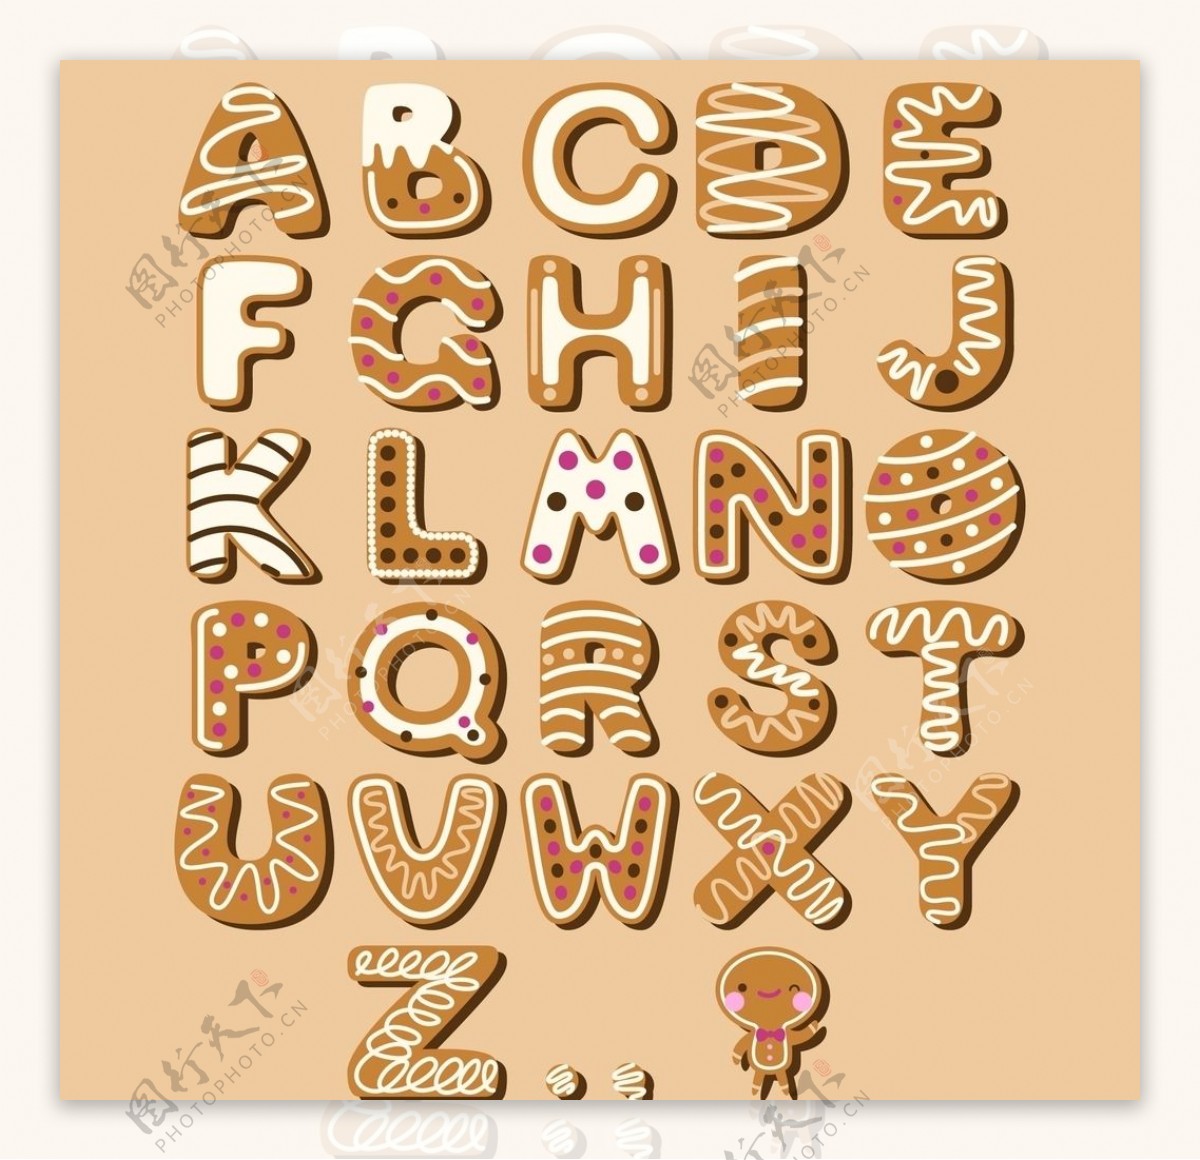 字母数字英文图片